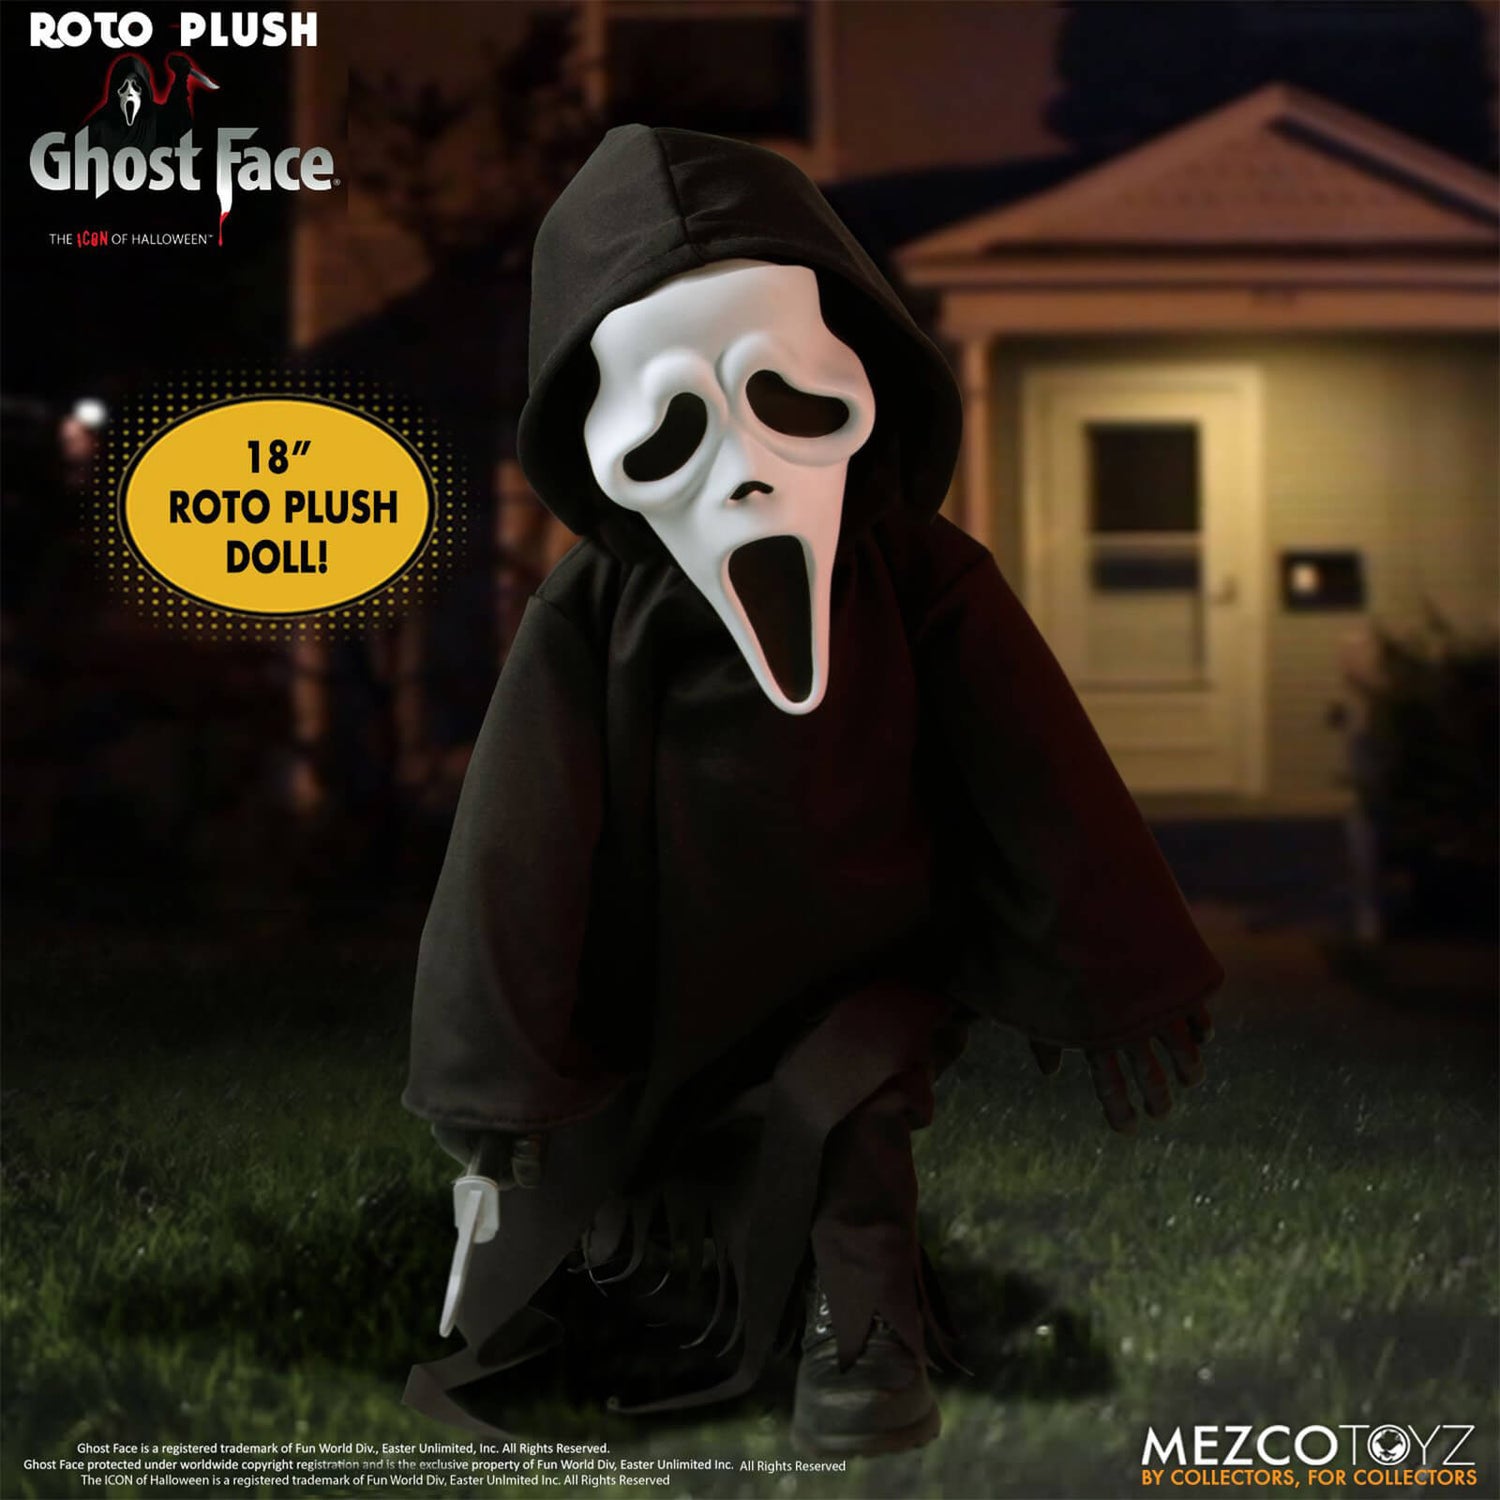 Mezco Scream Ghost Face MDS 18 Inch Roto Plush Figure